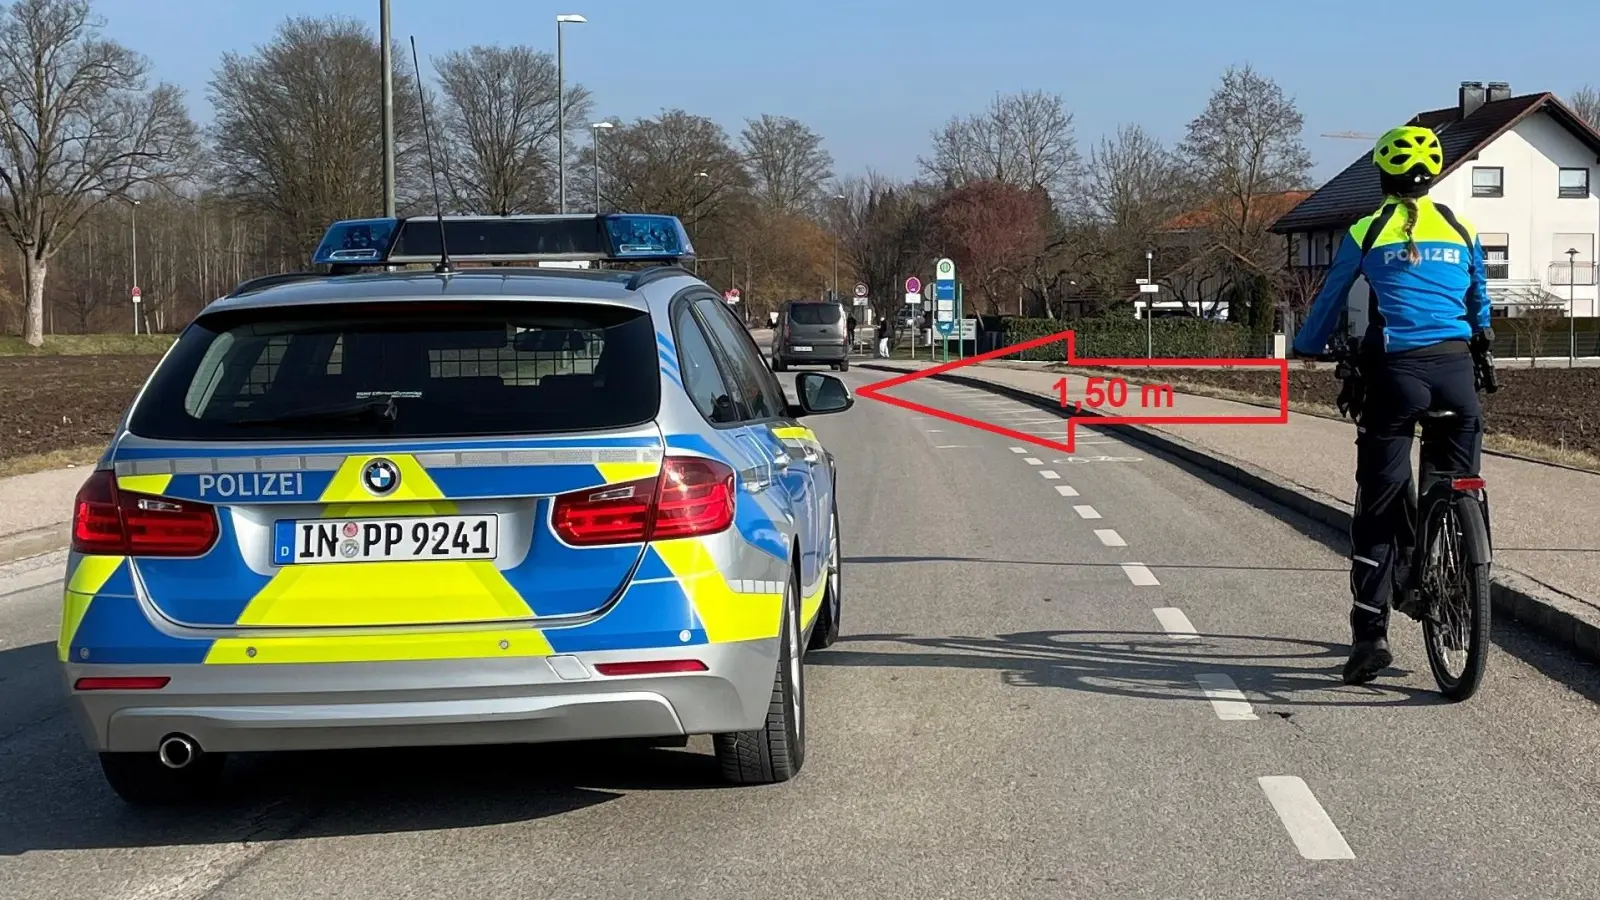 Ausreichend Abstand halten ist eine gesetzliche Pflicht - auch wenn ein markierter Fahrradweg vorhanden ist. (Foto: Benjamin Brückner, Polizeihauptkommissar, PI Erding)